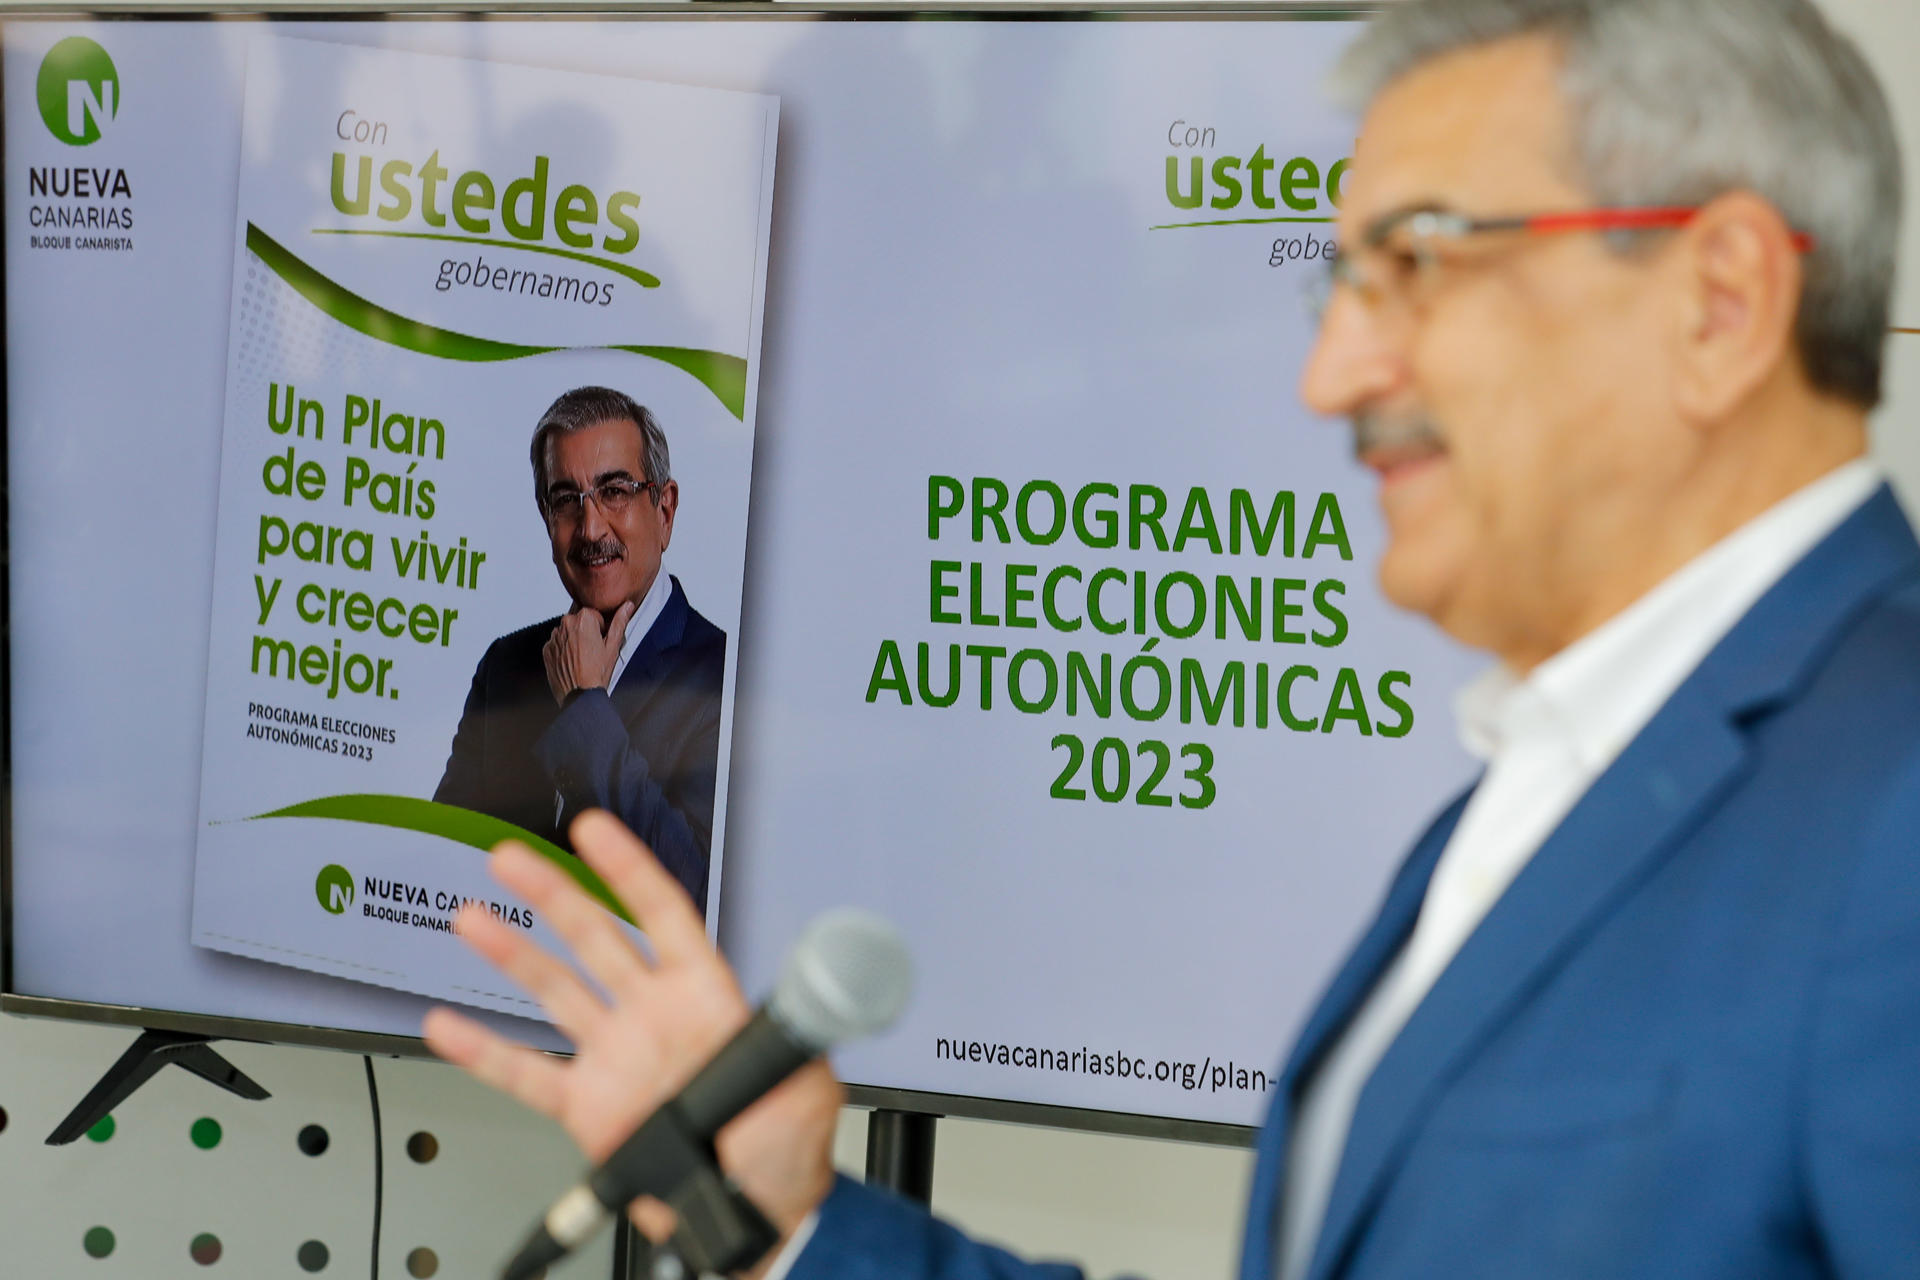 El candidato de Nueva Canarias a presidente del Gobierno, Román Rodríguez, ha presentado este viernes su programa electoral, denominado "Un plan de país para vivir y crecer mejor". EFE/ Elvira Urquijo A.